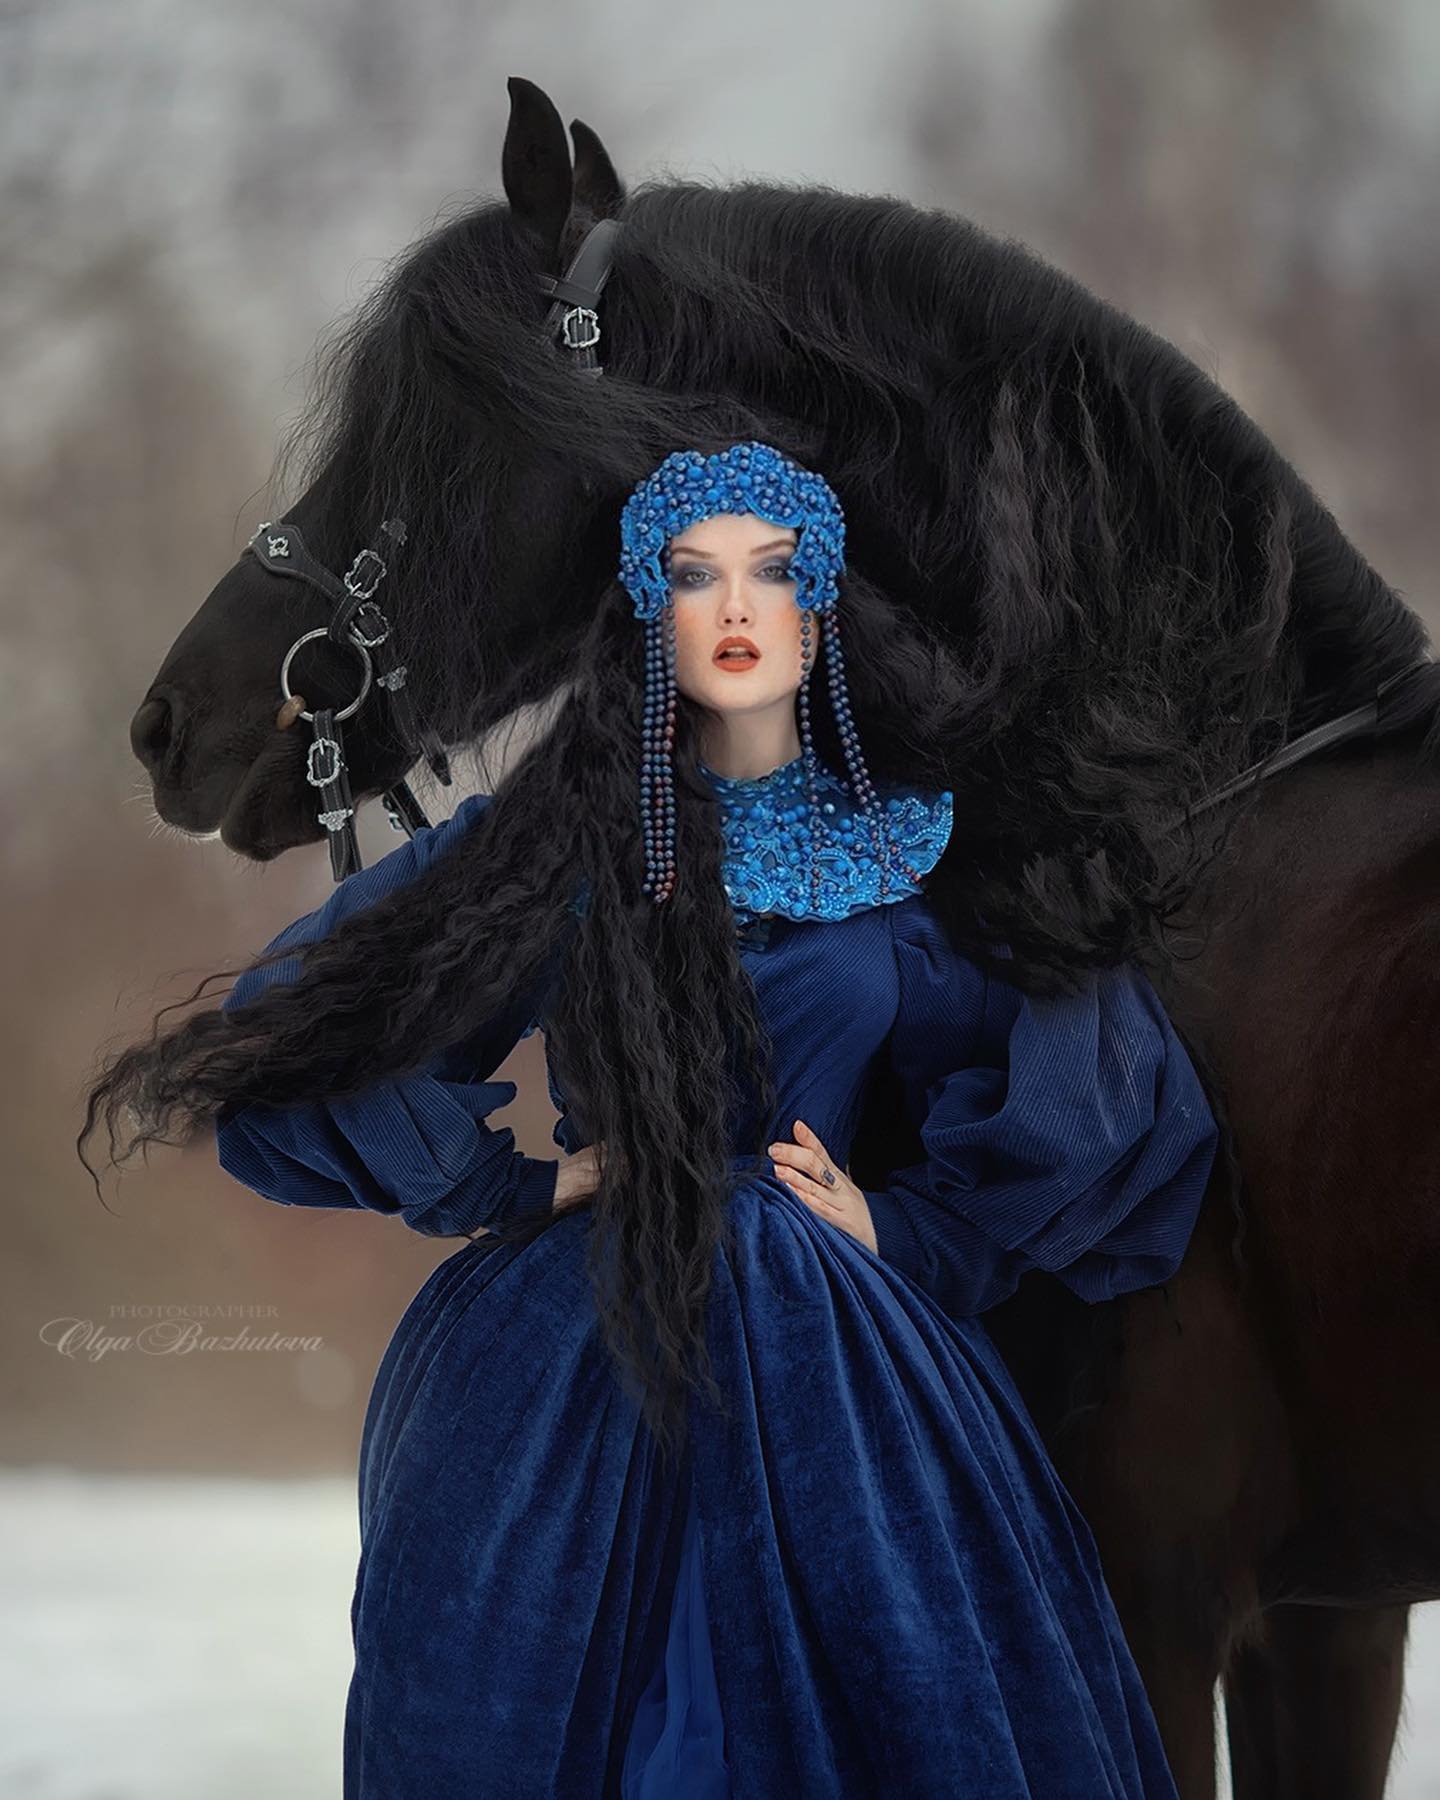 Olga Bazhutova fotografia equestre - Modelo com vestido de inverno azul e posando ao lado de cavalo